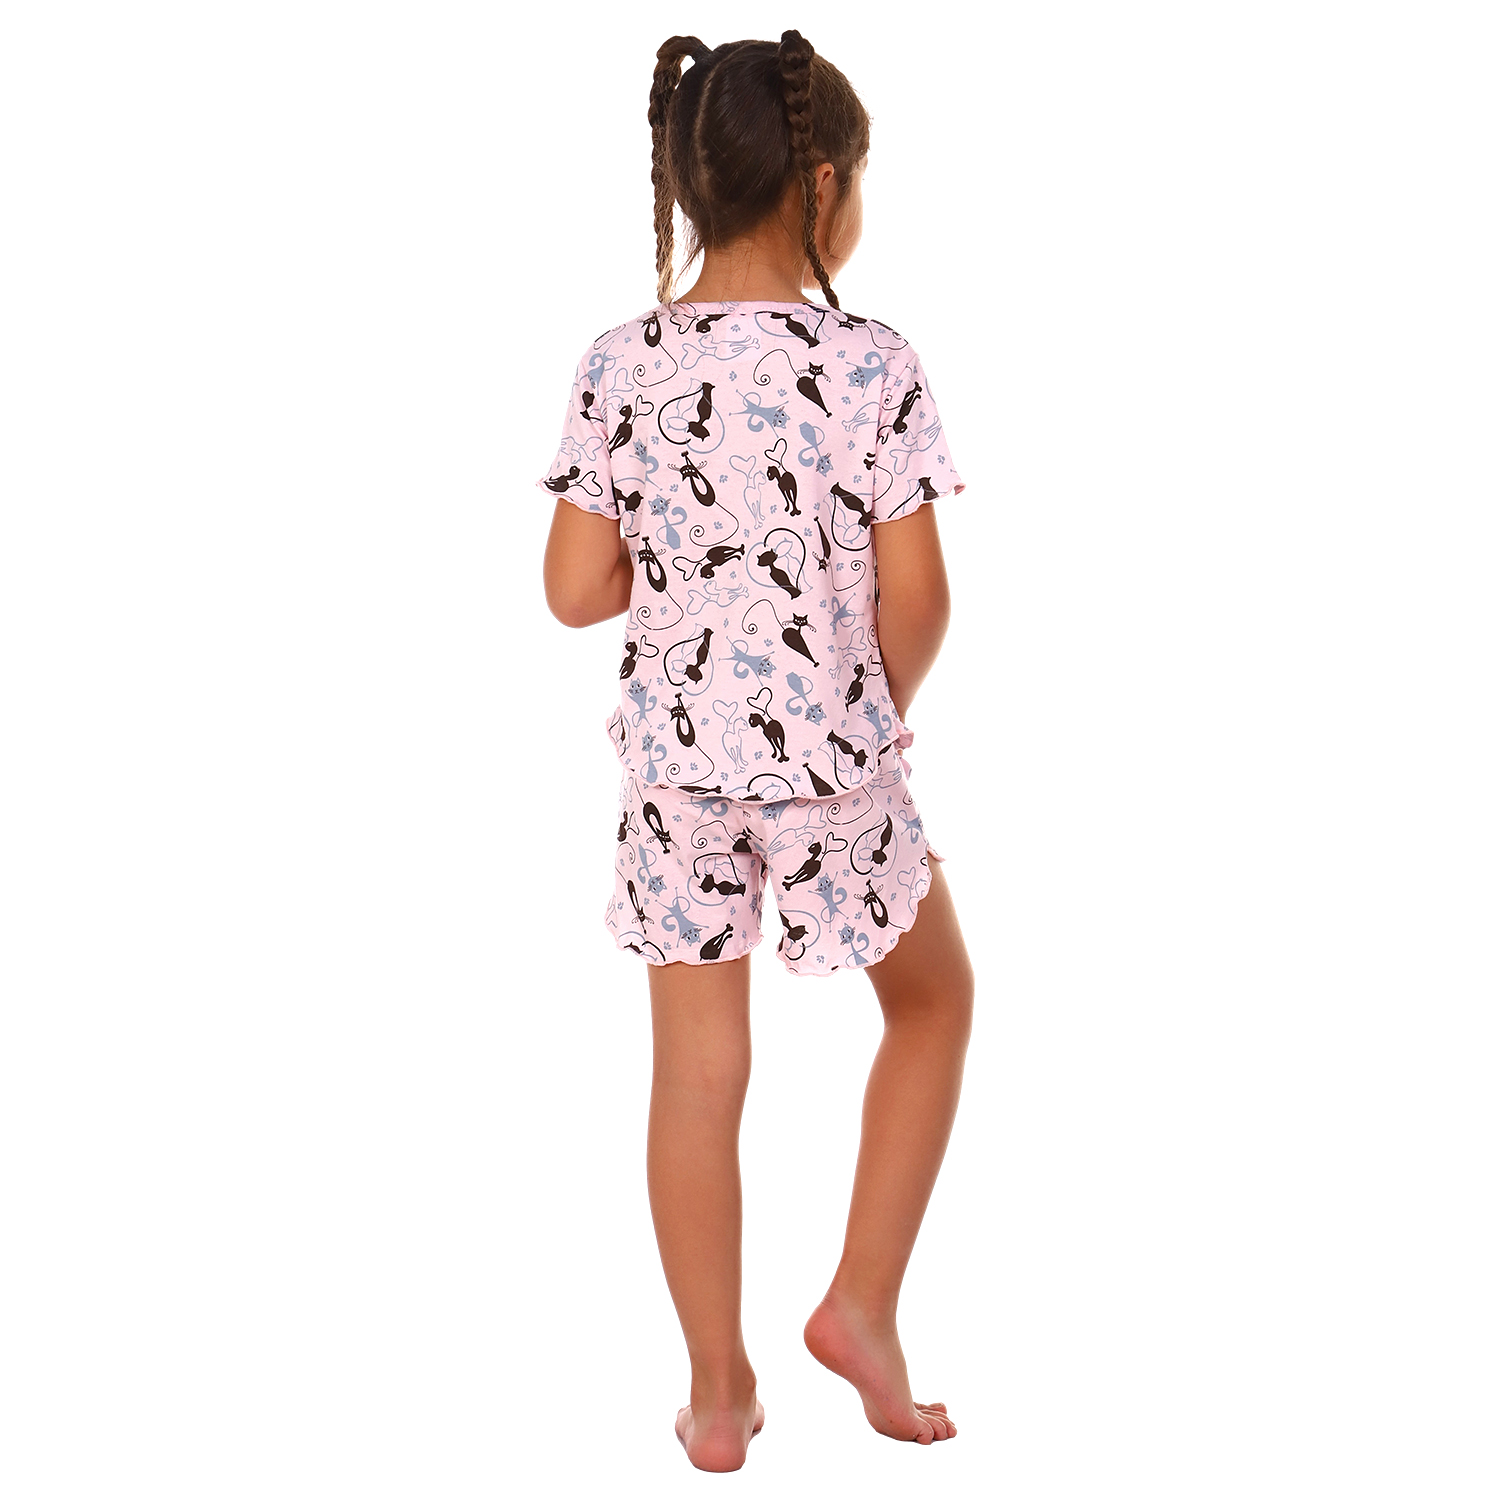 Пижама Детская Одежда 0410КД2/розовый2 - фото 4